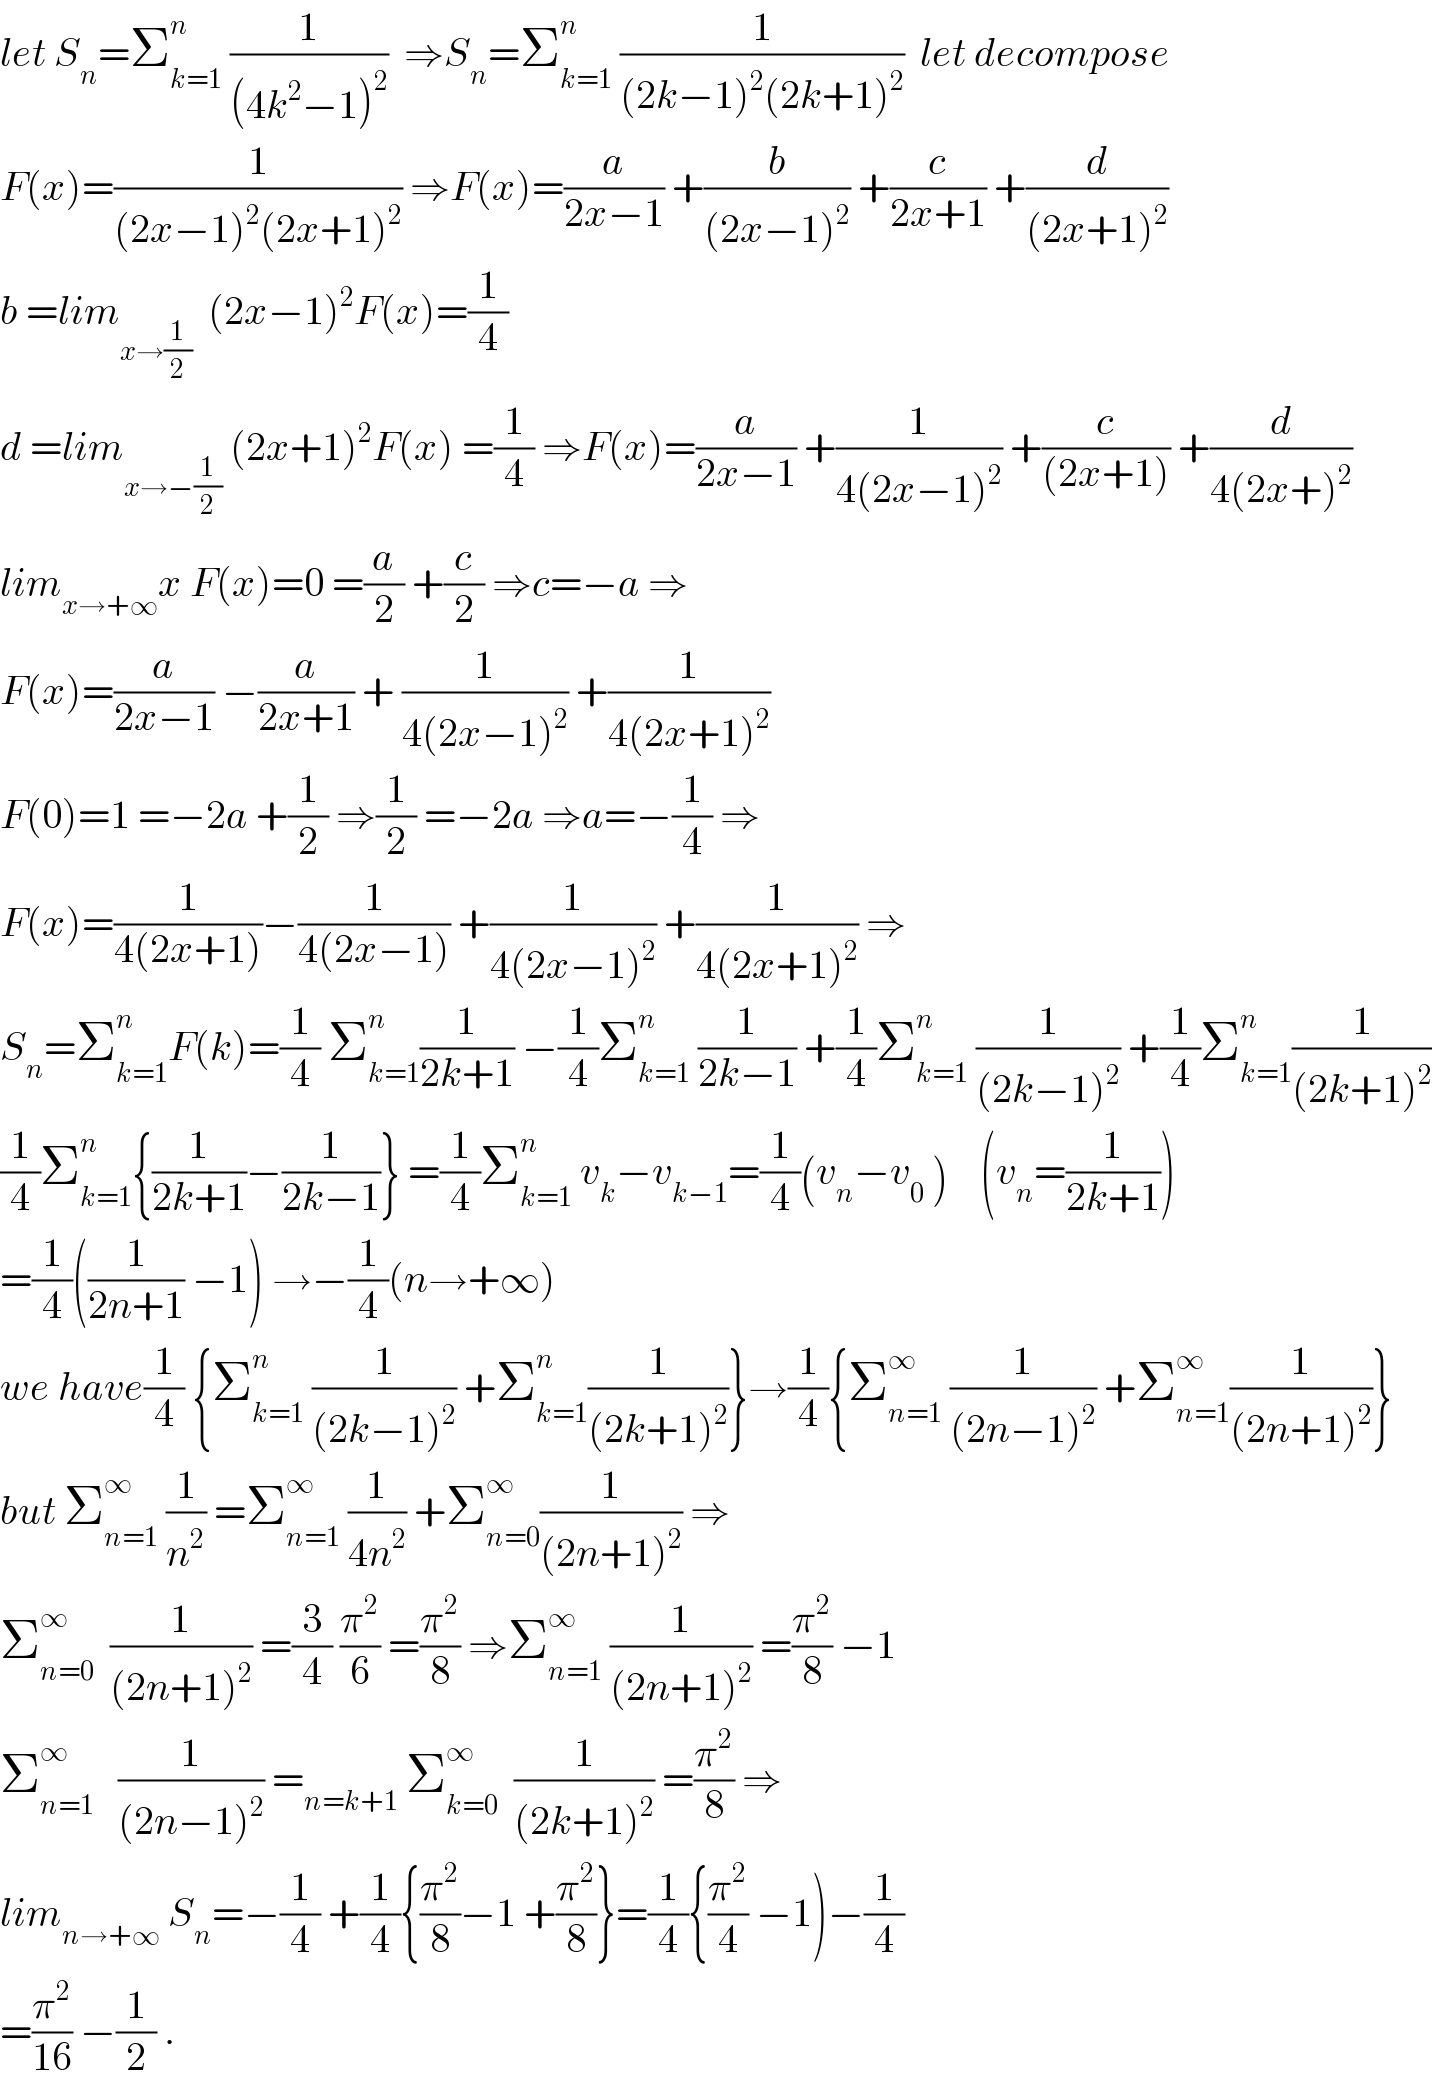 let S_n =Σ_(k=1) ^n  (1/((4k^2 −1)^2 ))  ⇒S_n =Σ_(k=1) ^n  (1/((2k−1)^2 (2k+1)^2 ))  let decompose  F(x)=(1/((2x−1)^2 (2x+1)^2 )) ⇒F(x)=(a/(2x−1)) +(b/((2x−1)^2 )) +(c/(2x+1)) +(d/((2x+1)^2 ))  b =lim_(x→(1/2))   (2x−1)^2 F(x)=(1/4)  d =lim_(x→−(1/2))  (2x+1)^2 F(x) =(1/4) ⇒F(x)=(a/(2x−1)) +(1/(4(2x−1)^2 )) +(c/((2x+1))) +(d/(4(2x+)^2 ))  lim_(x→+∞) x F(x)=0 =(a/2) +(c/2) ⇒c=−a ⇒  F(x)=(a/(2x−1)) −(a/(2x+1)) + (1/(4(2x−1)^2 )) +(1/(4(2x+1)^2 ))  F(0)=1 =−2a +(1/2) ⇒(1/2) =−2a ⇒a=−(1/4) ⇒  F(x)=(1/(4(2x+1)))−(1/(4(2x−1))) +(1/(4(2x−1)^2 )) +(1/(4(2x+1)^2 )) ⇒  S_n =Σ_(k=1) ^n F(k)=(1/4) Σ_(k=1) ^n (1/(2k+1)) −(1/4)Σ_(k=1) ^n  (1/(2k−1)) +(1/4)Σ_(k=1) ^n  (1/((2k−1)^2 )) +(1/4)Σ_(k=1) ^n (1/((2k+1)^2 ))  (1/4)Σ_(k=1) ^n {(1/(2k+1))−(1/(2k−1))} =(1/4)Σ_(k=1) ^n  v_k −v_(k−1) =(1/4)(v_n −v_0  )    (v_n =(1/(2k+1)))  =(1/4)((1/(2n+1)) −1) →−(1/4)(n→+∞)  we have(1/4) {Σ_(k=1) ^n  (1/((2k−1)^2 )) +Σ_(k=1) ^n (1/((2k+1)^2 ))}→(1/4){Σ_(n=1) ^∞  (1/((2n−1)^2 )) +Σ_(n=1) ^∞ (1/((2n+1)^2 ))}  but Σ_(n=1) ^∞  (1/n^2 ) =Σ_(n=1) ^∞  (1/(4n^2 )) +Σ_(n=0) ^∞ (1/((2n+1)^2 )) ⇒  Σ_(n=0) ^∞   (1/((2n+1)^2 )) =(3/4) (π^2 /6) =(π^2 /8) ⇒Σ_(n=1) ^∞  (1/((2n+1)^2 )) =(π^2 /8) −1  Σ_(n=1) ^∞    (1/((2n−1)^2 )) =_(n=k+1)  Σ_(k=0) ^∞   (1/((2k+1)^2 )) =(π^2 /8) ⇒  lim_(n→+∞)  S_n =−(1/4) +(1/4){(π^2 /8)−1 +(π^2 /8)}=(1/4){(π^2 /4) −1)−(1/4)  =(π^2 /(16)) −(1/2) .  